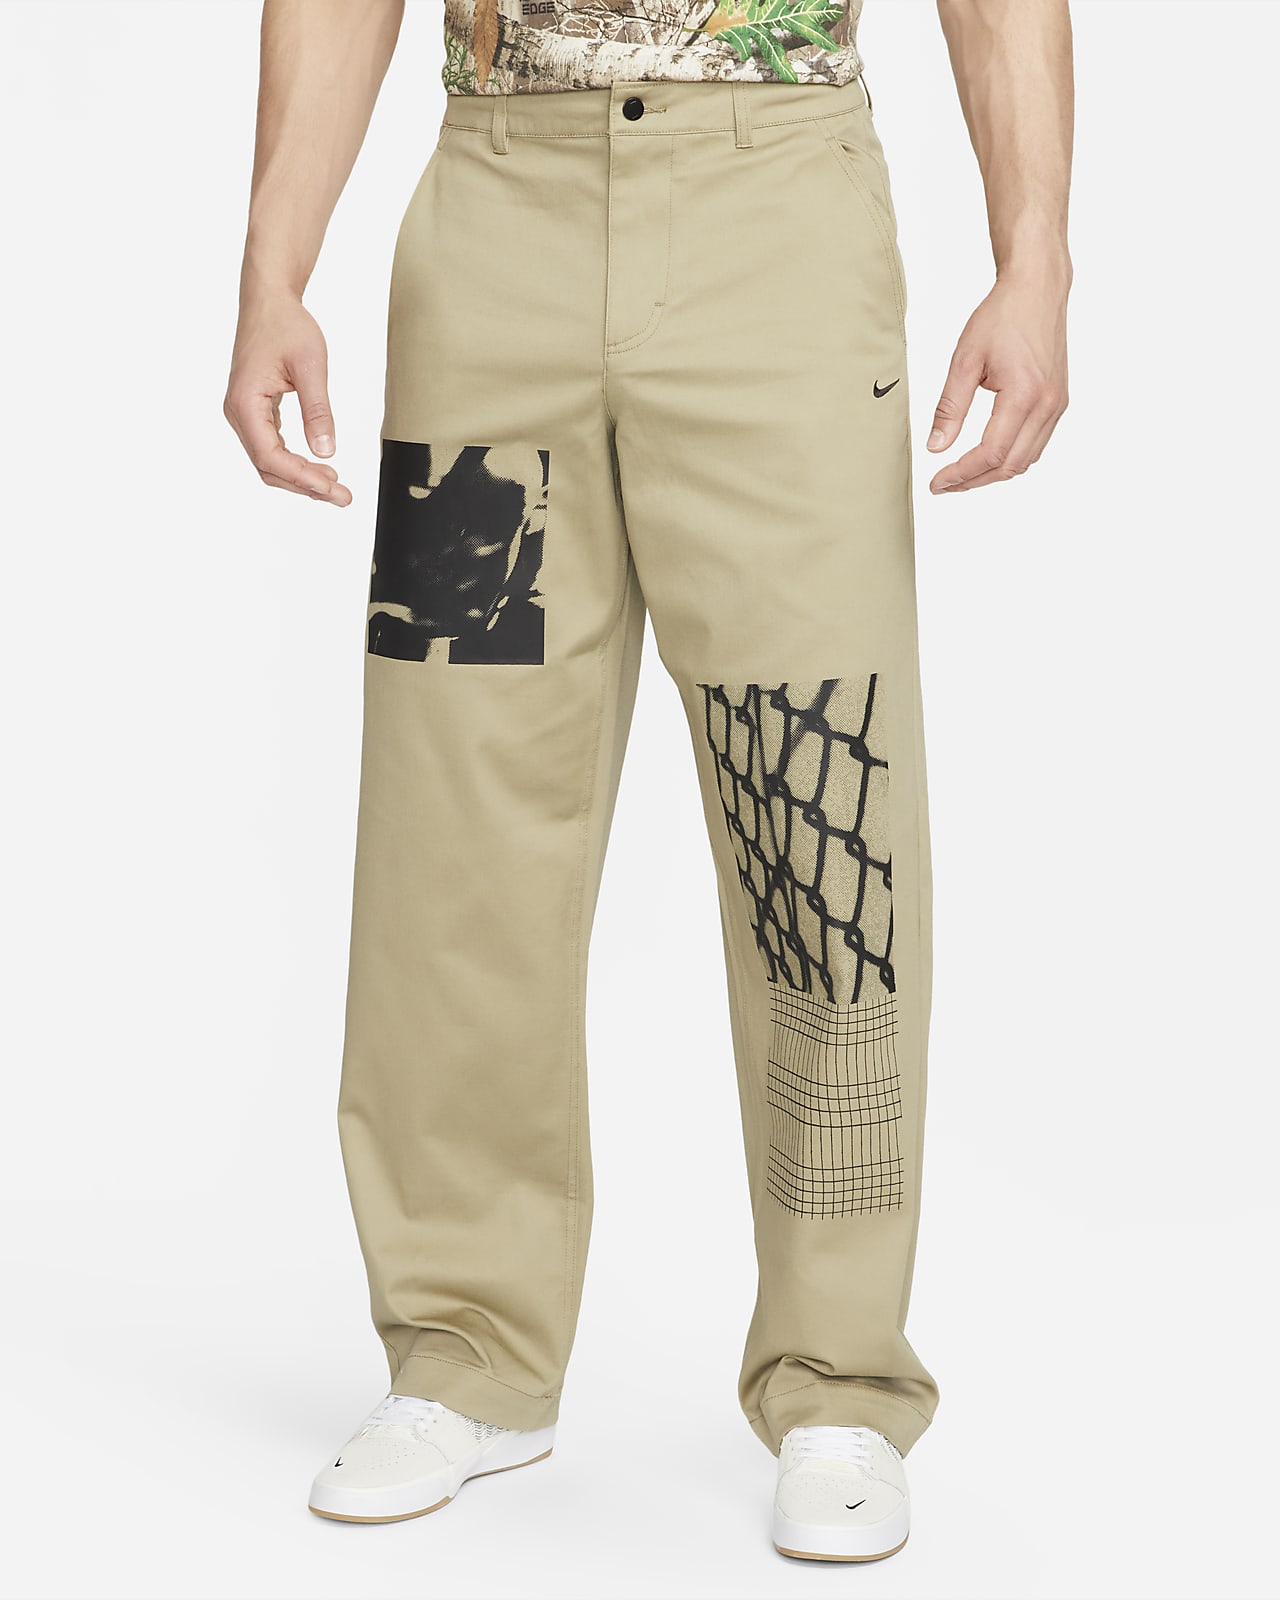 Pantalon chino de skateboard à motifs Nike SB pour homme